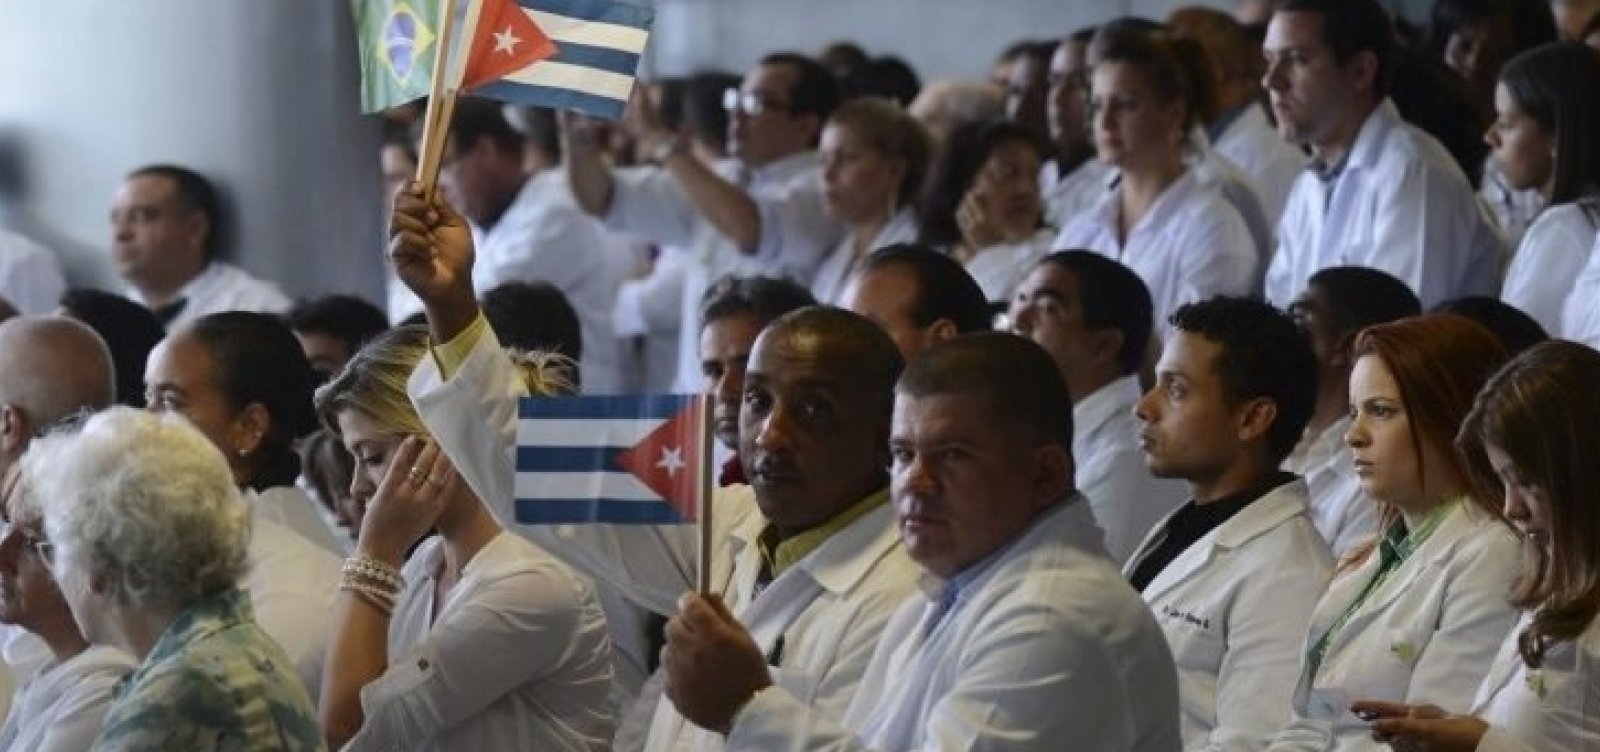 Ministério da Saúde anuncia seleção de Médicos brasileiros para substituir cubanos